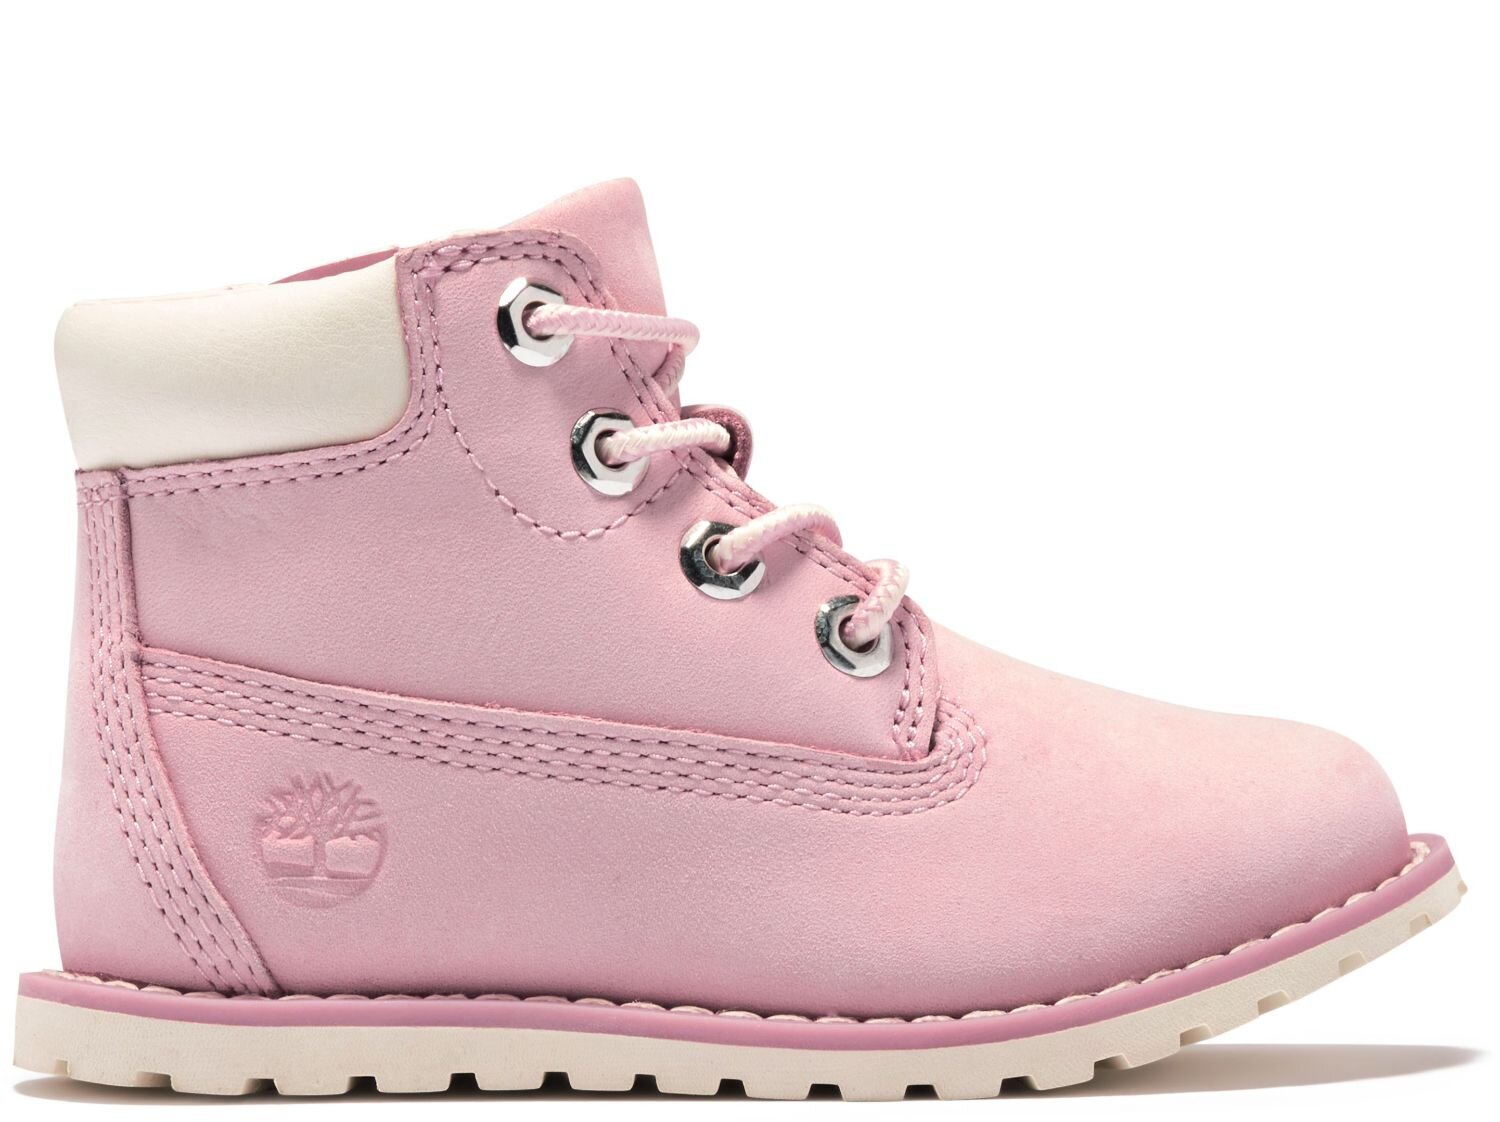 Timberland Toddler Pokey Pine Pink Nubuck - FOOTWEAR-Infant : Kids Clothing : Shop Online : Kid Republic - W20 Timberland